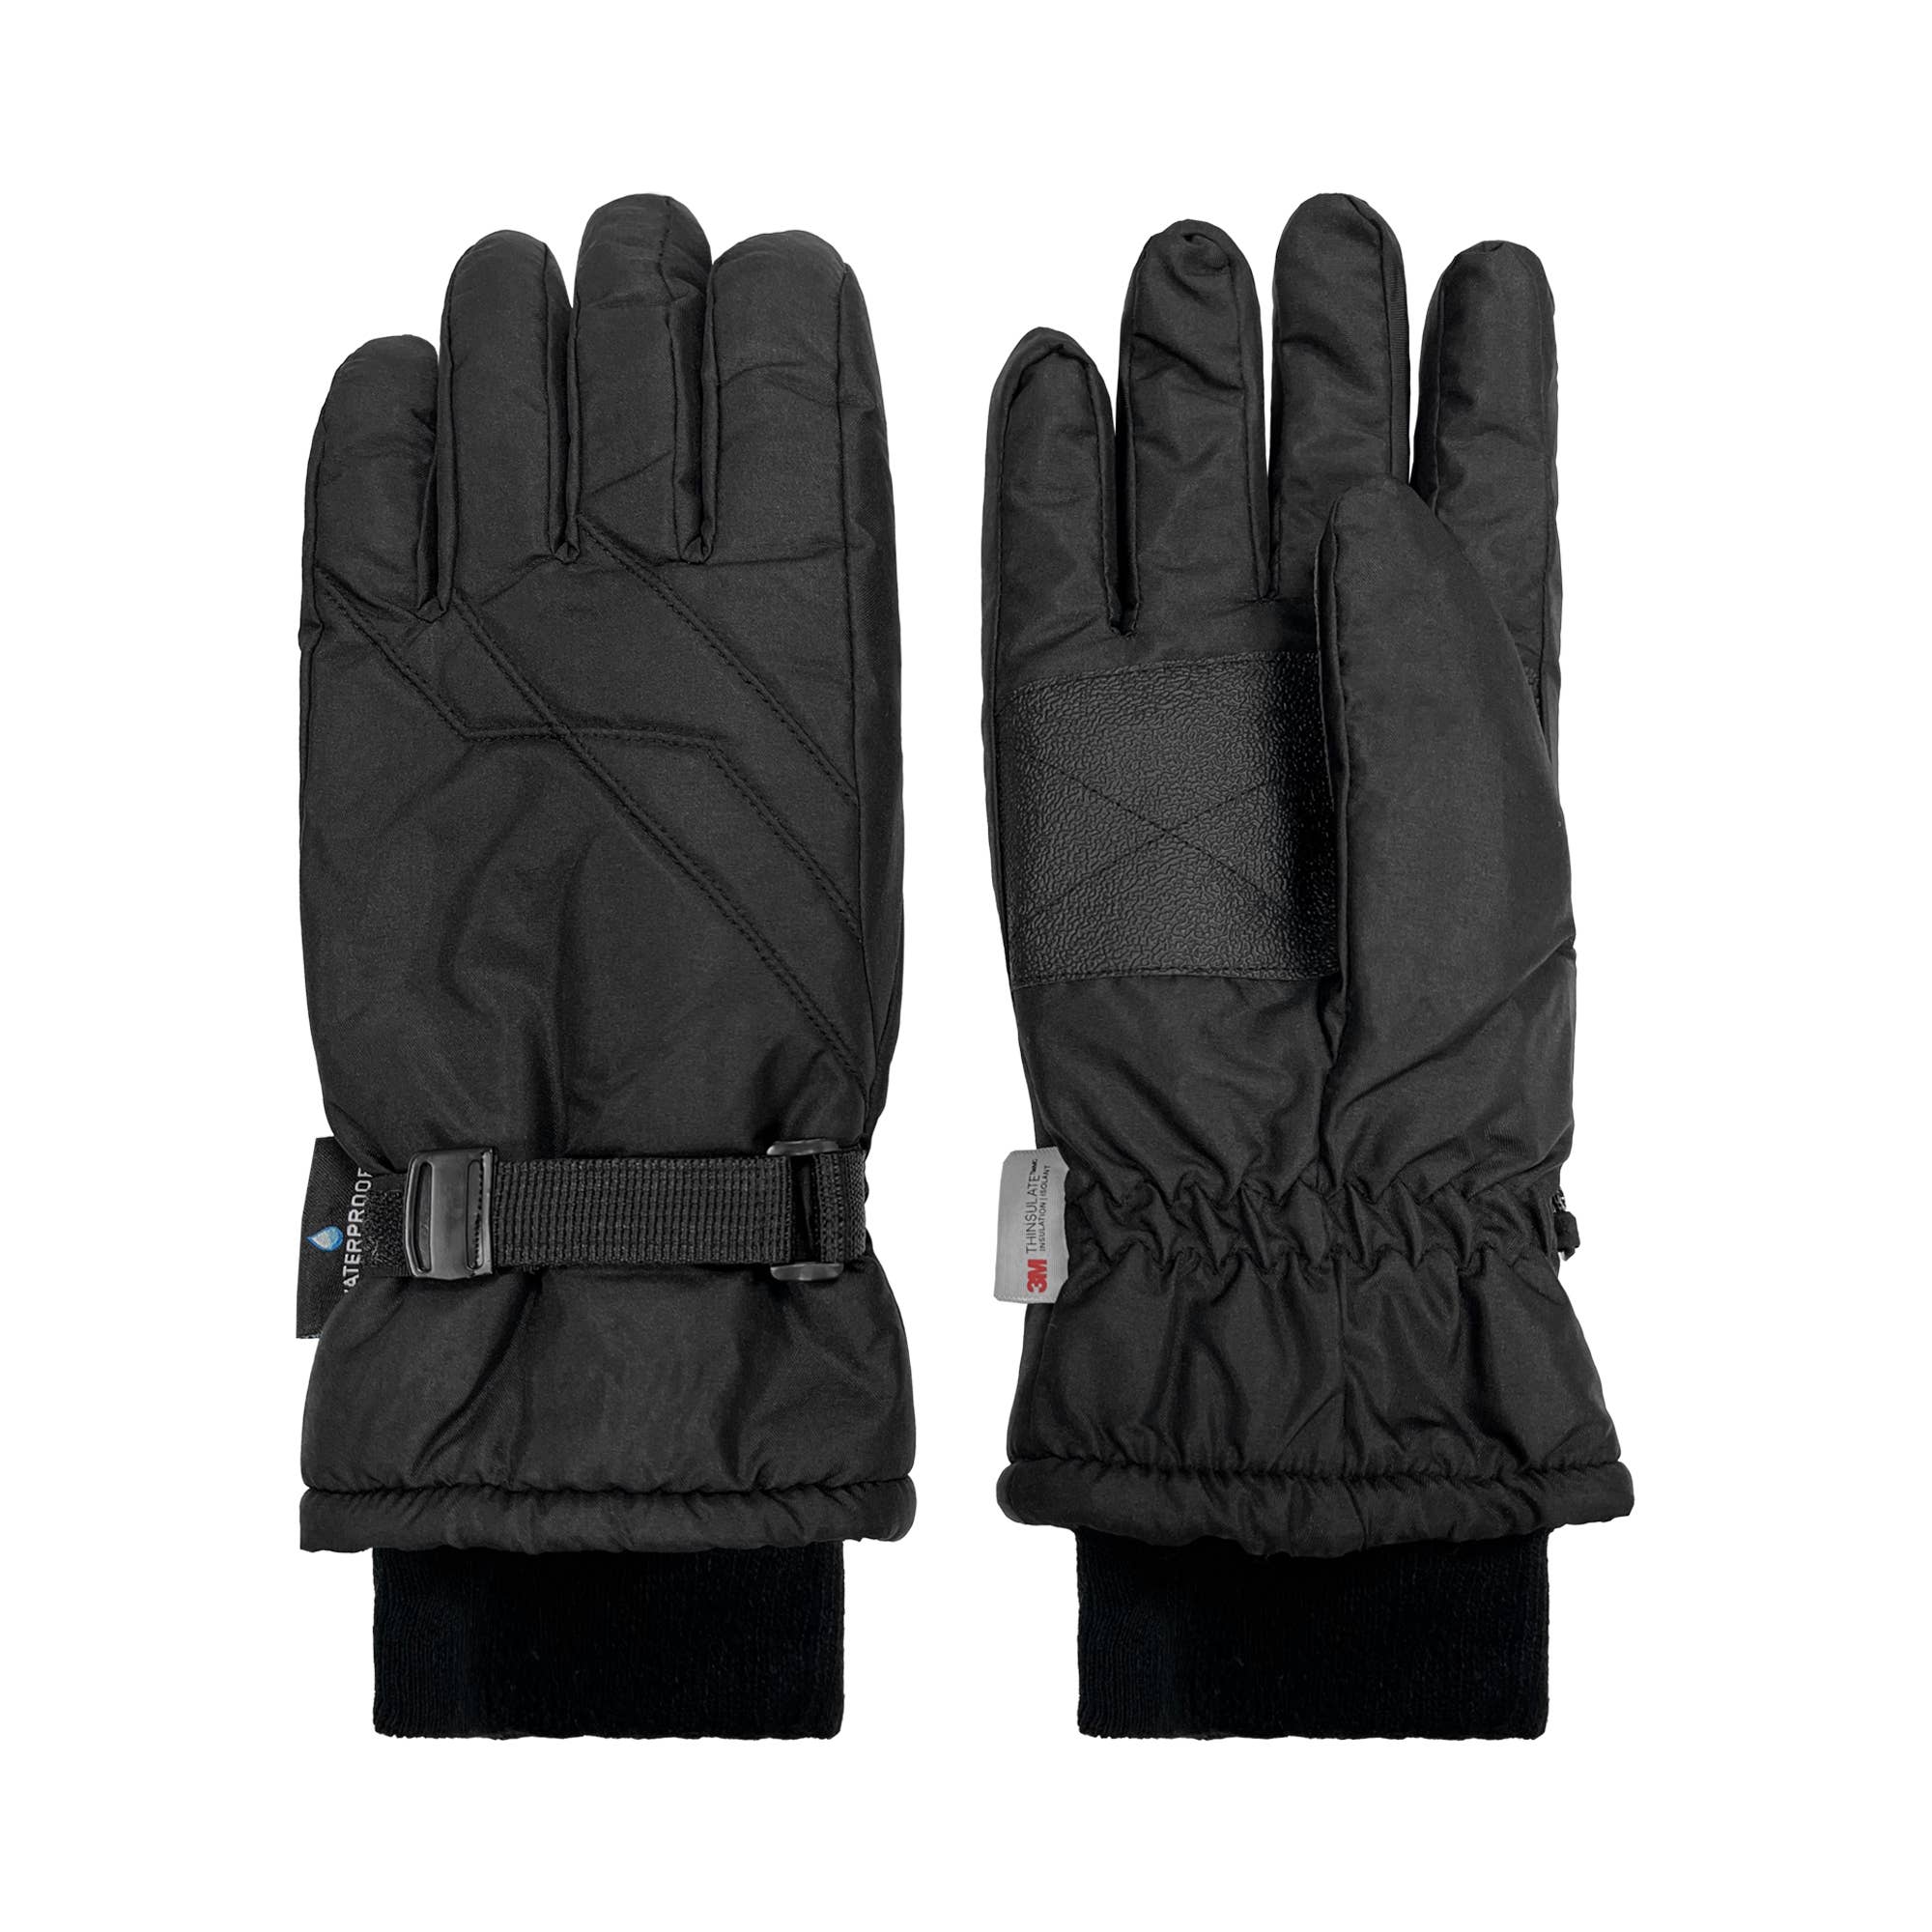 Mens Taslon Ski Glove -XL / 2XL